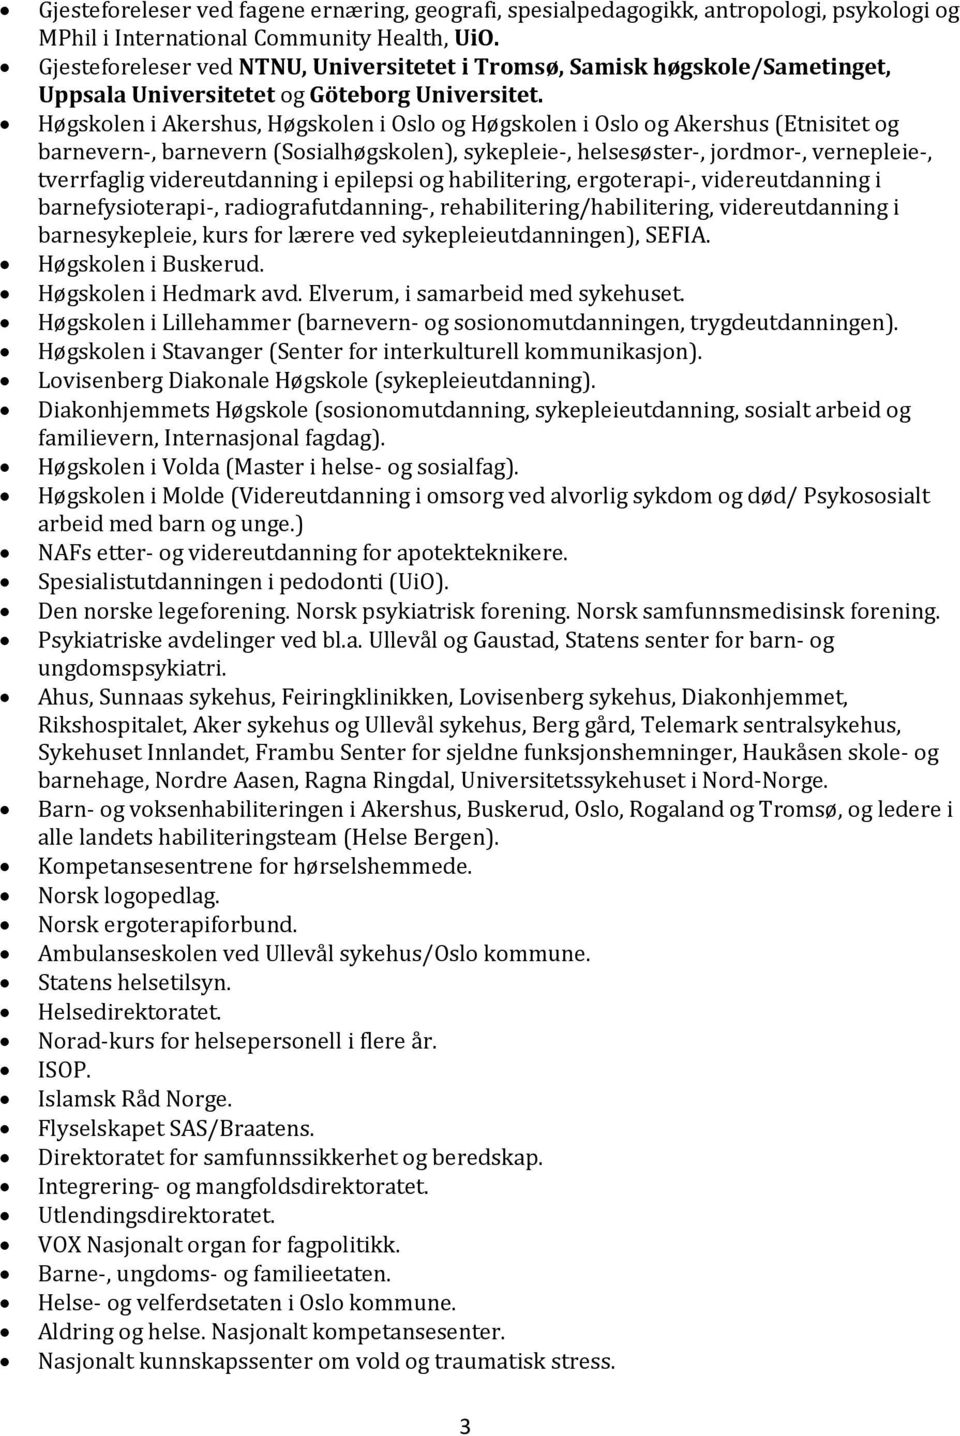 Høgskolen i Akershus, Høgskolen i Oslo og Høgskolen i Oslo og Akershus (Etnisitet og barnevern-, barnevern (Sosialhøgskolen), sykepleie-, helsesøster-, jordmor-, vernepleie-, tverrfaglig